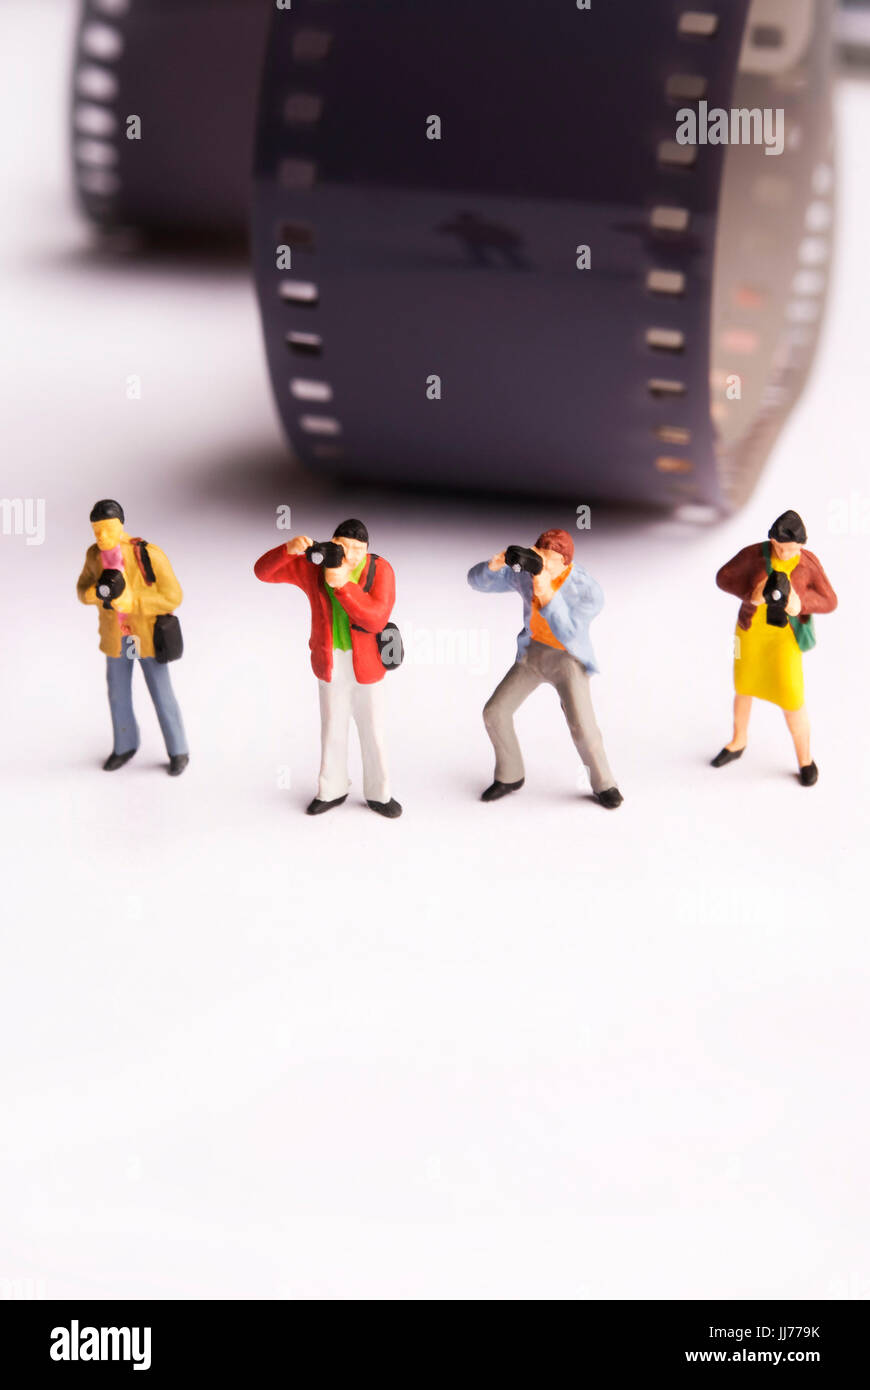 Miniatur-Figuren von Fotografen, Presse, Nachrichten und Paparazzi  Fotografie Stockfotografie - Alamy